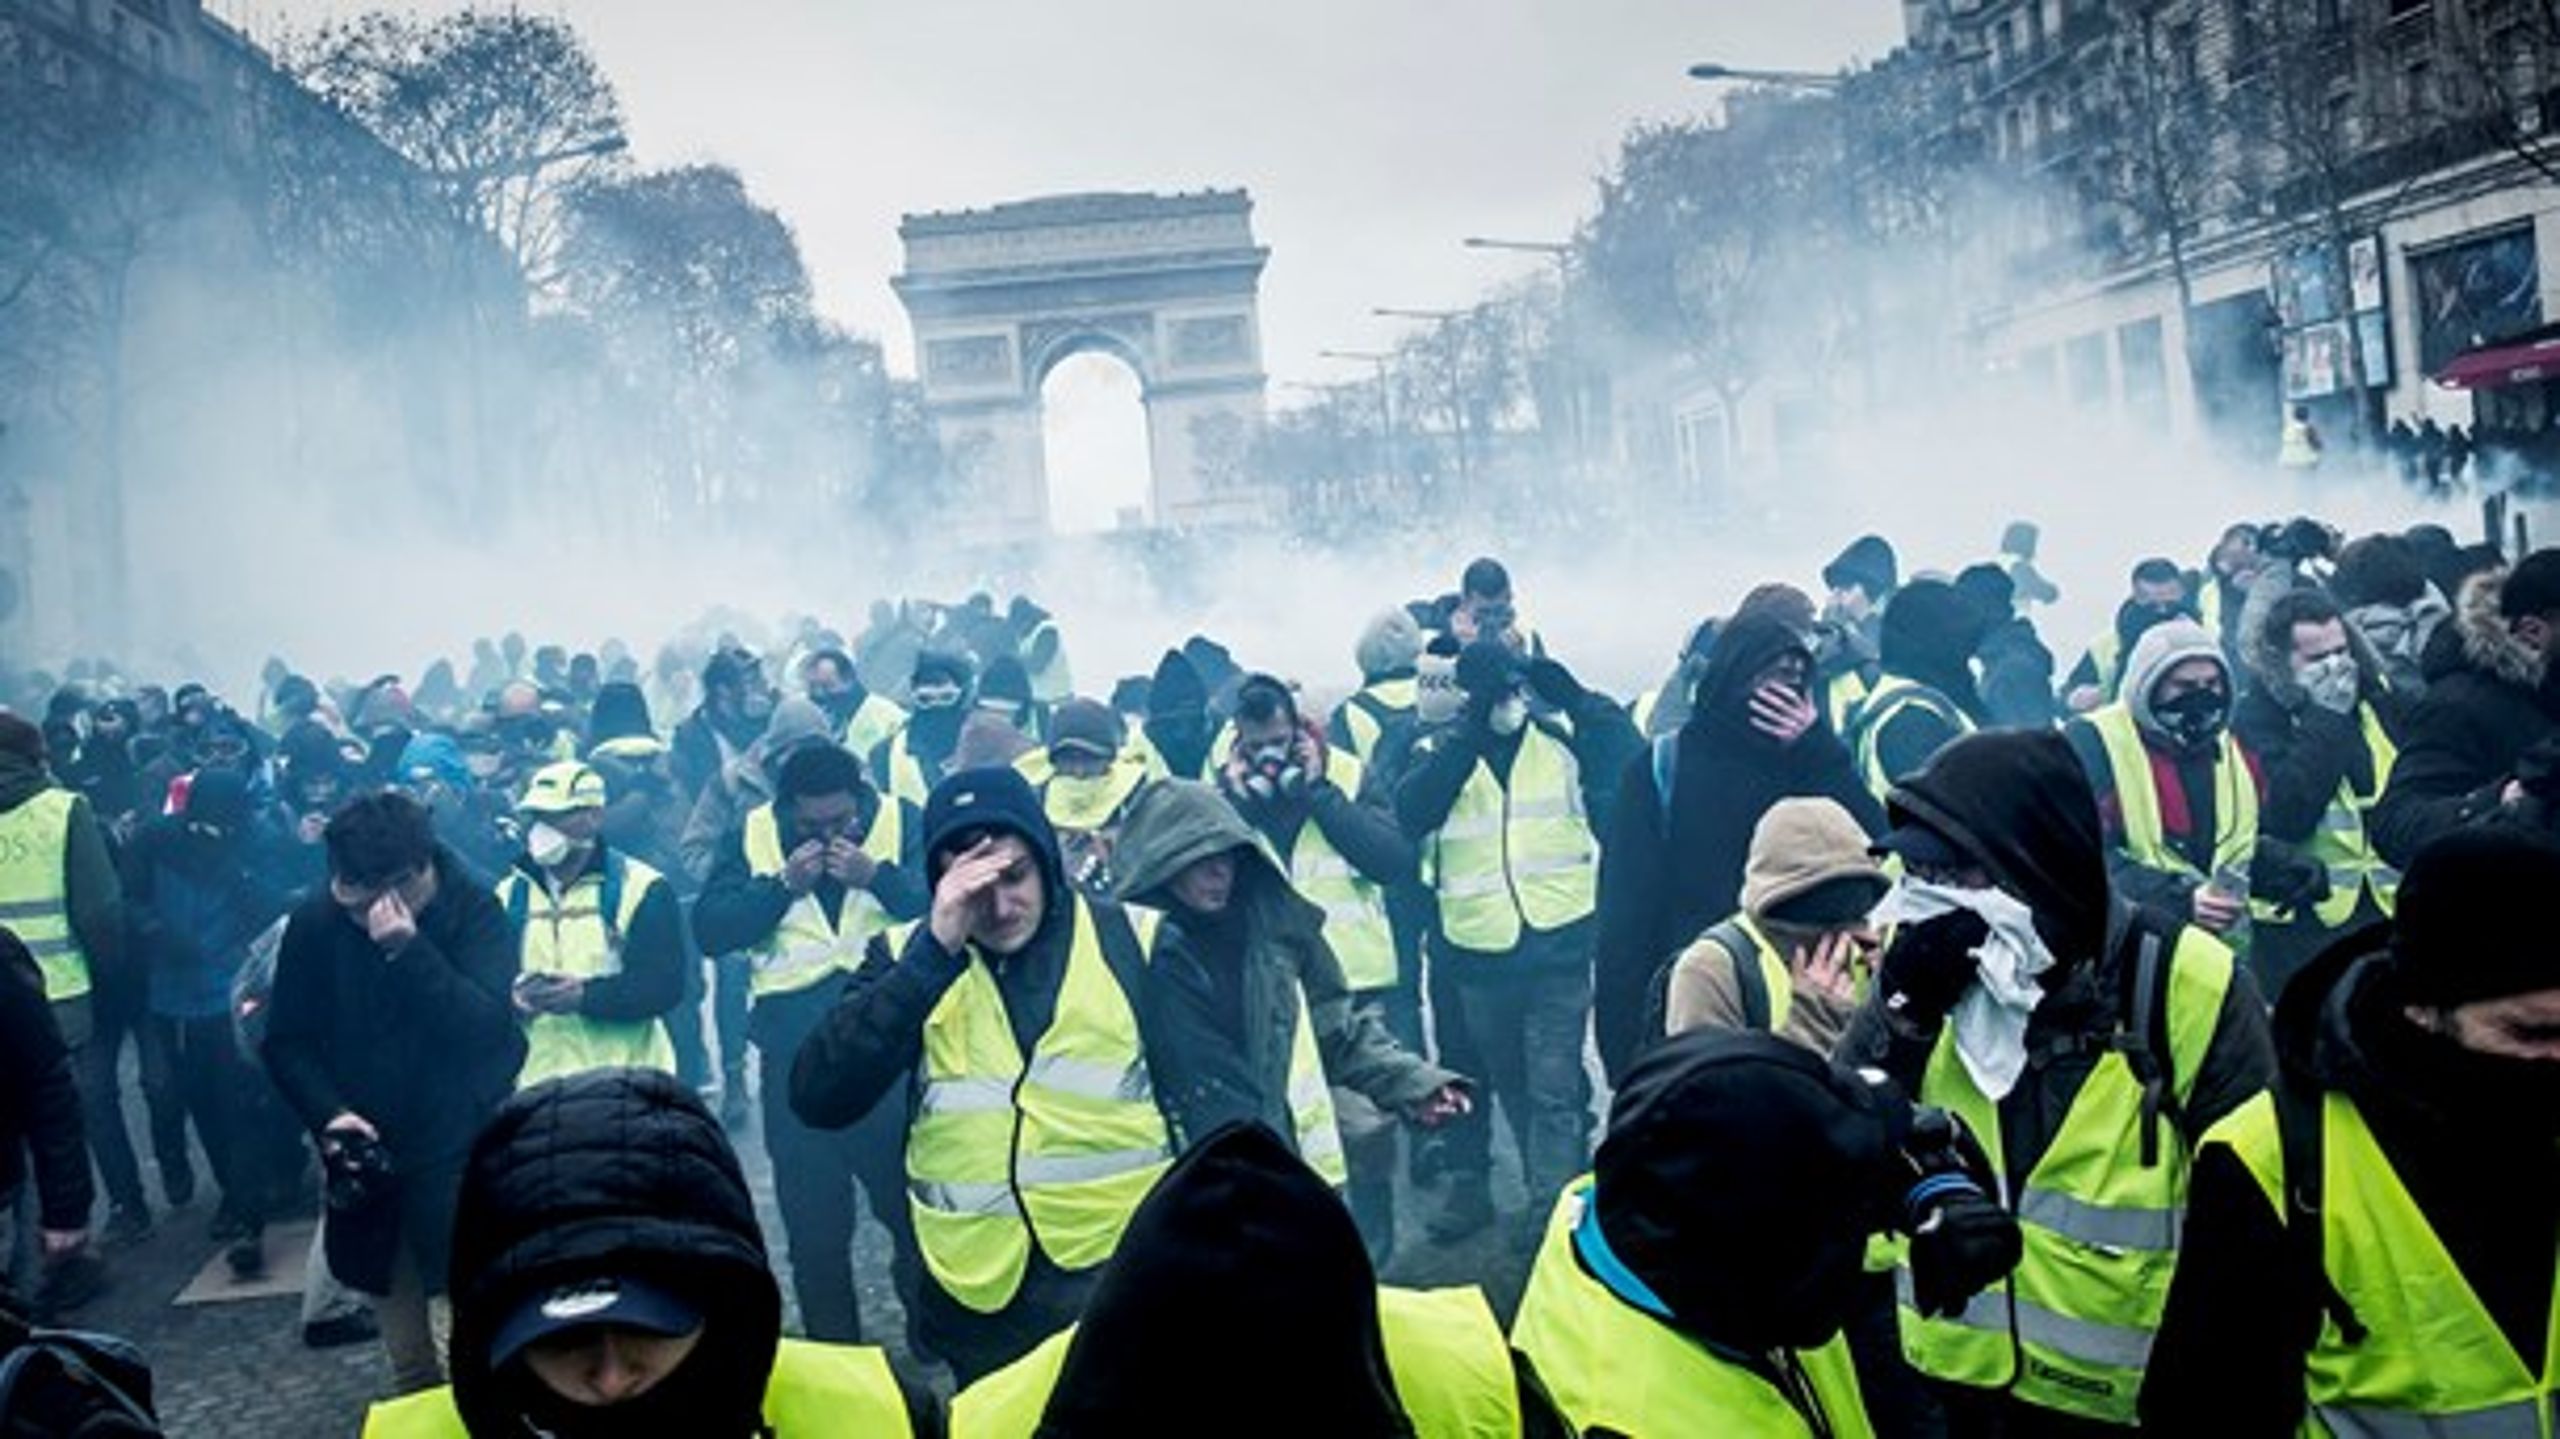 Weekendavisens journalist Aske Munck forsøger i ny bog at forklare årsagerne til Frankrigs problemer med endesløse strejker, de gule vestes oprør, terrorisme, arbejdsløshed og politikerlede.